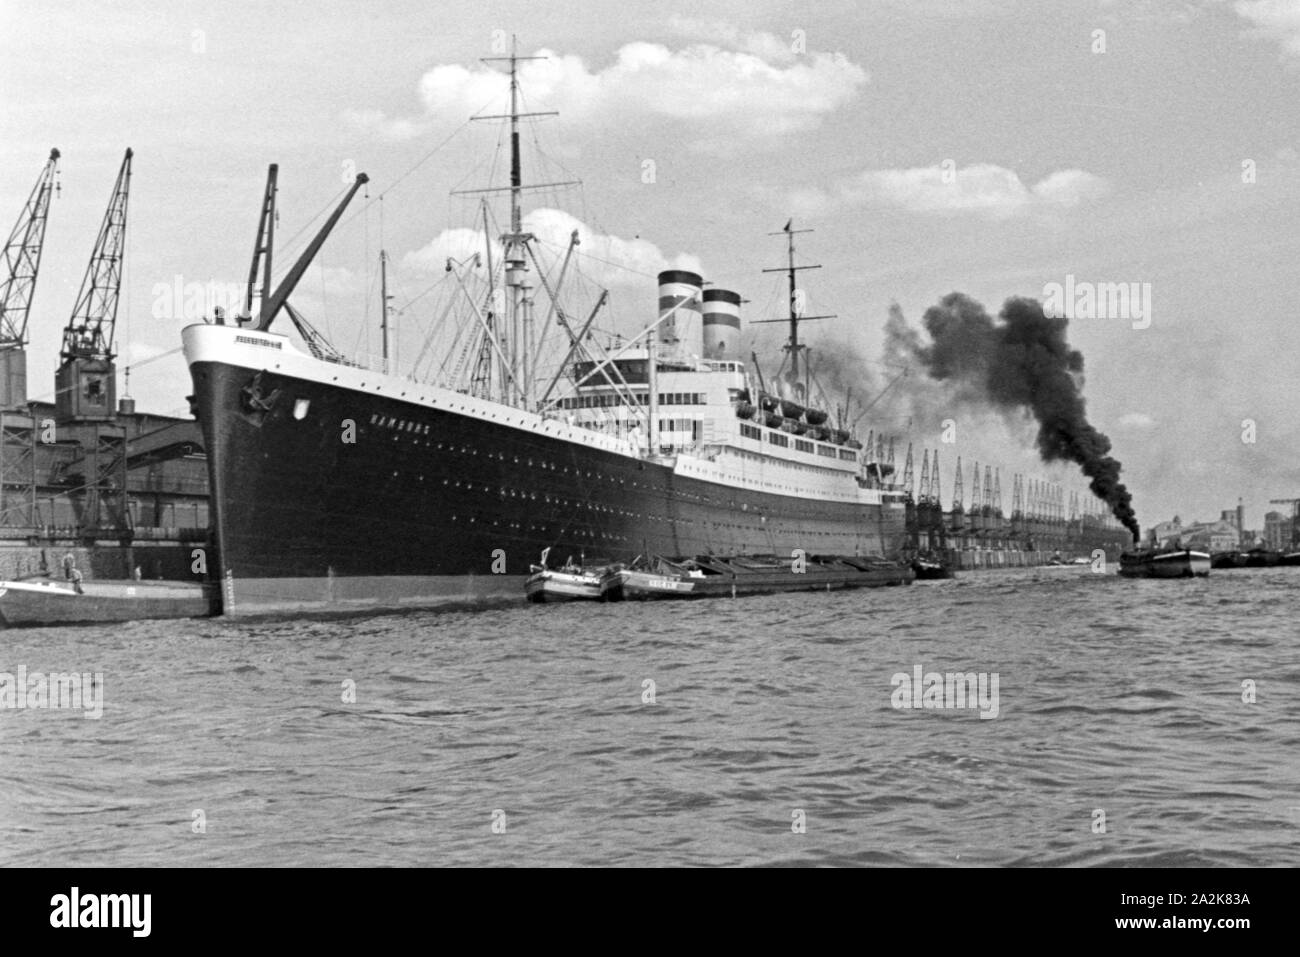 Das Passagierschiff 'Amburgo' im Hafen von Hamburg, 1930er Jahre. Passeggeri della nave a vapore " Hamburg' al porto di Amburgo, 1930s. Foto Stock